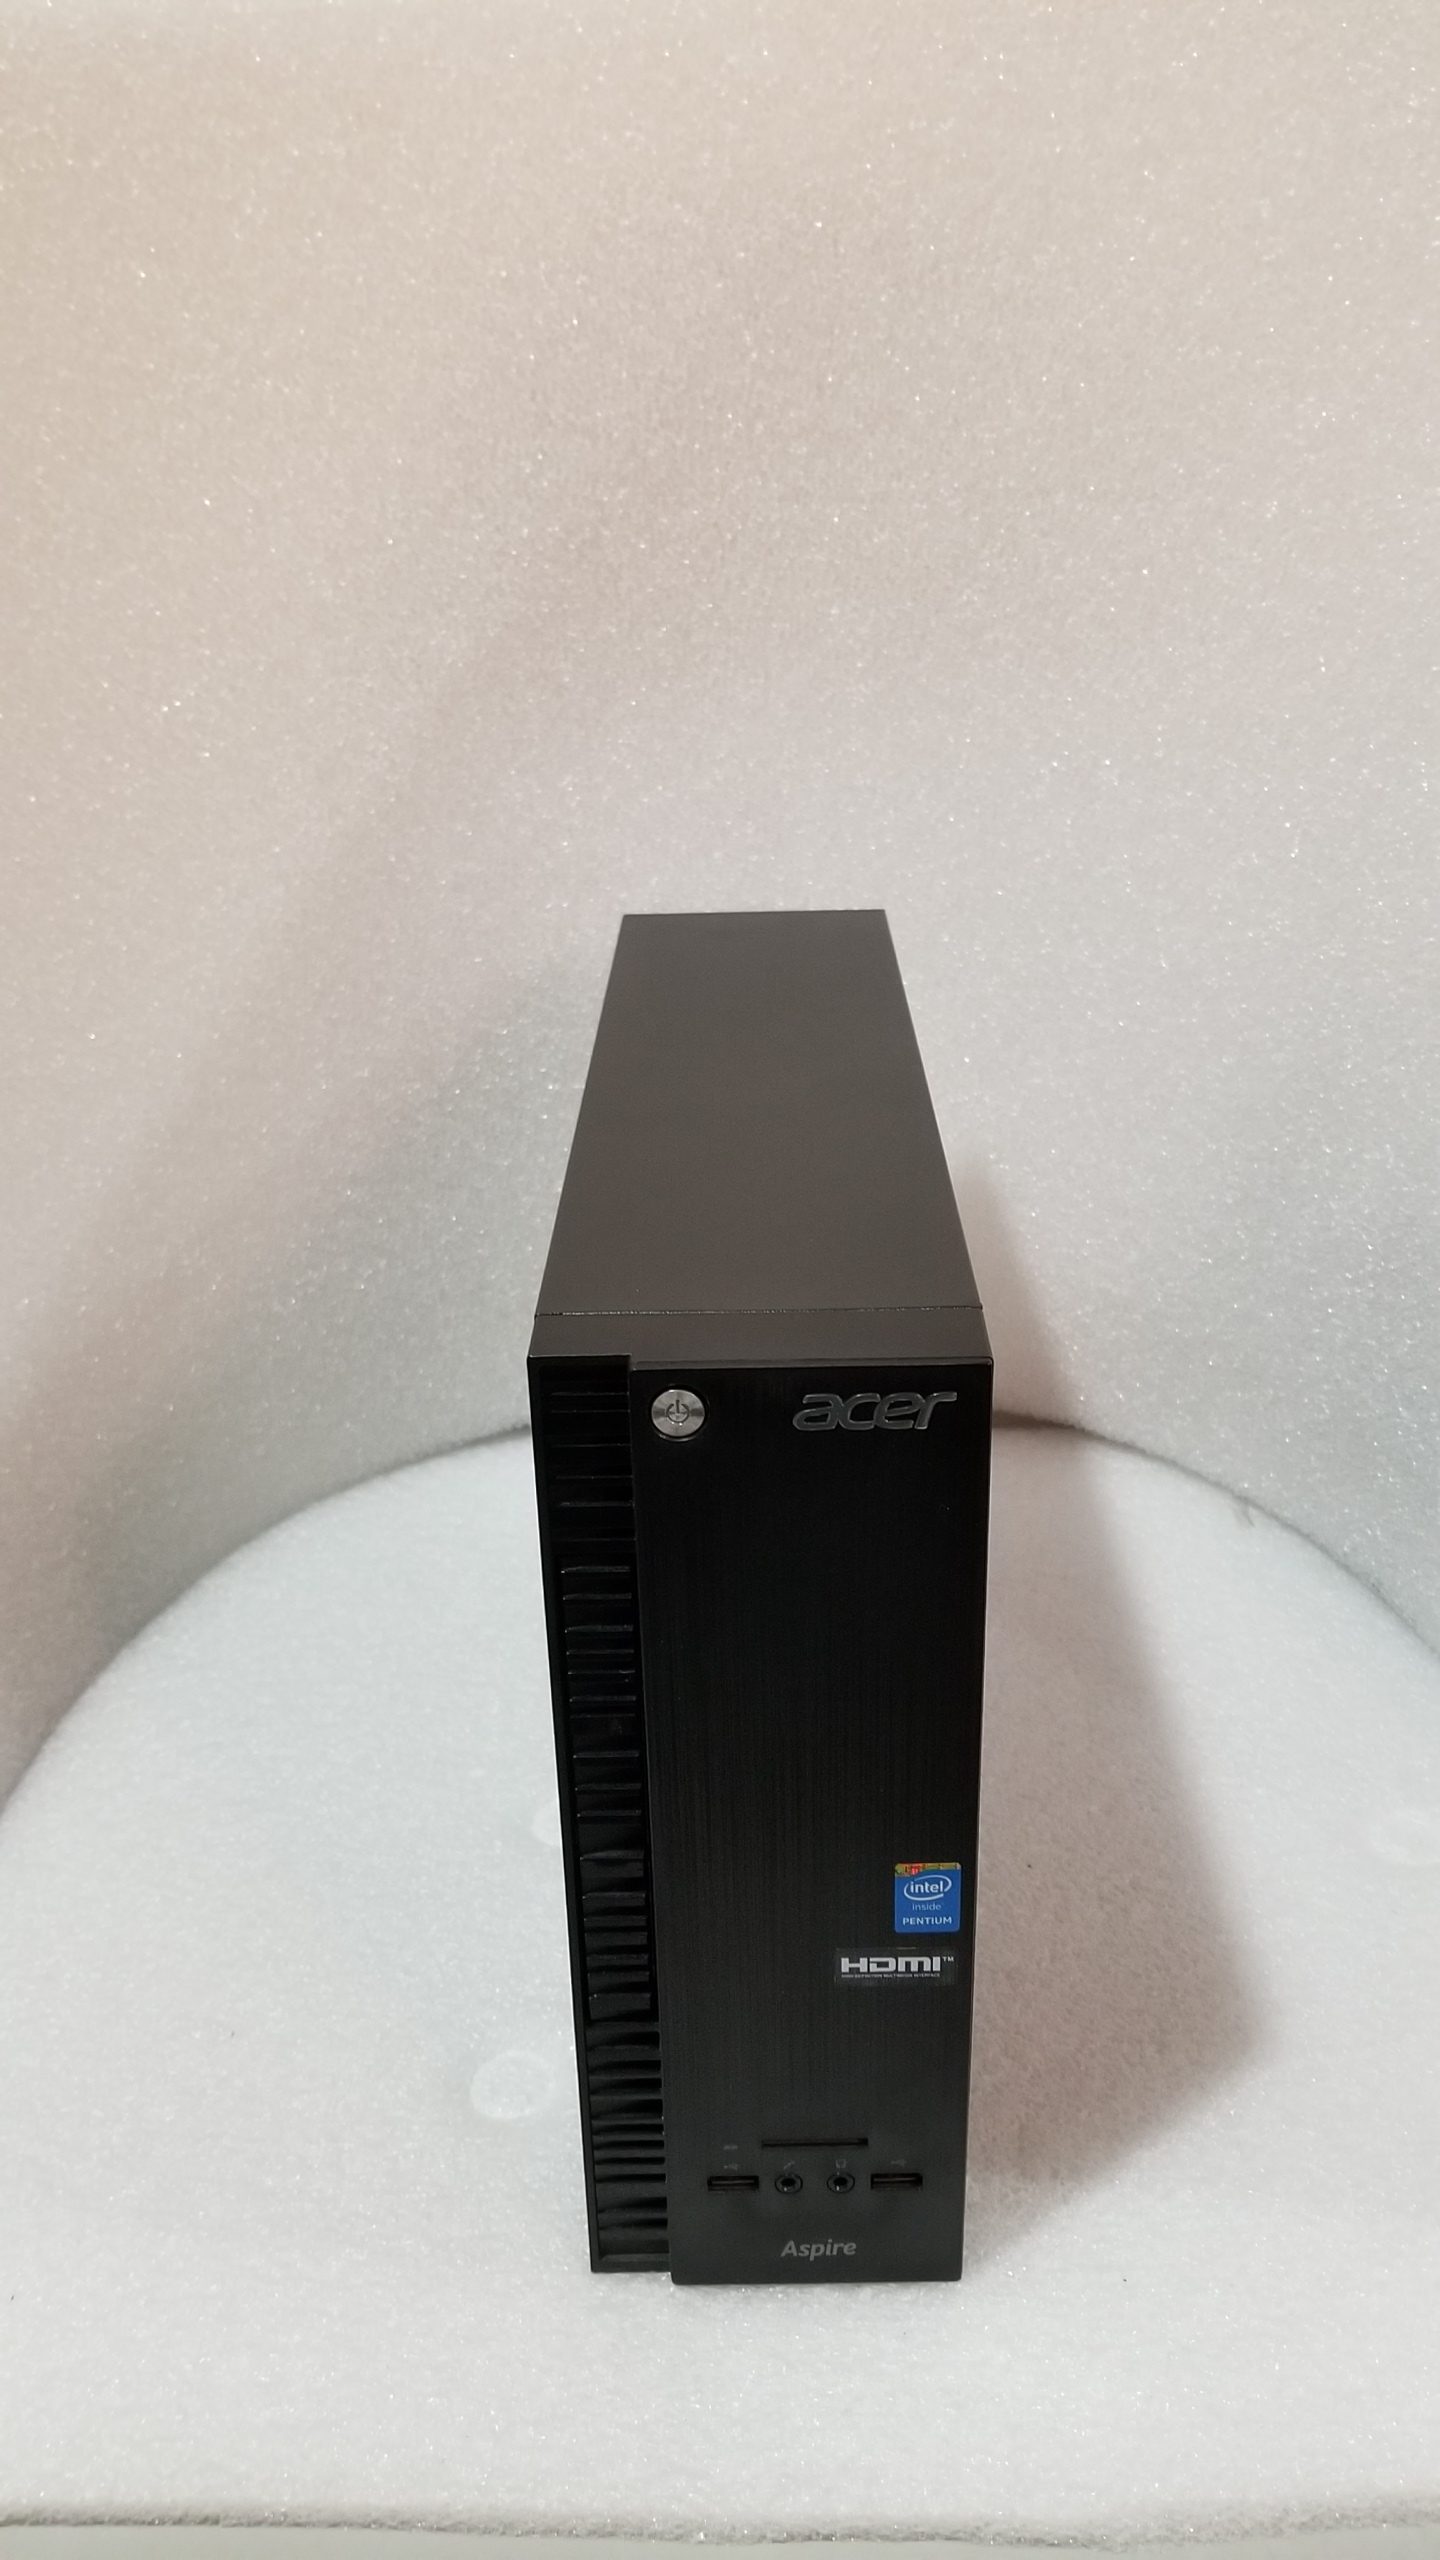 Acer Aspire XC-703 Intel Pentium J2900 @2.41GHz 4GB 1TB Windows 10 